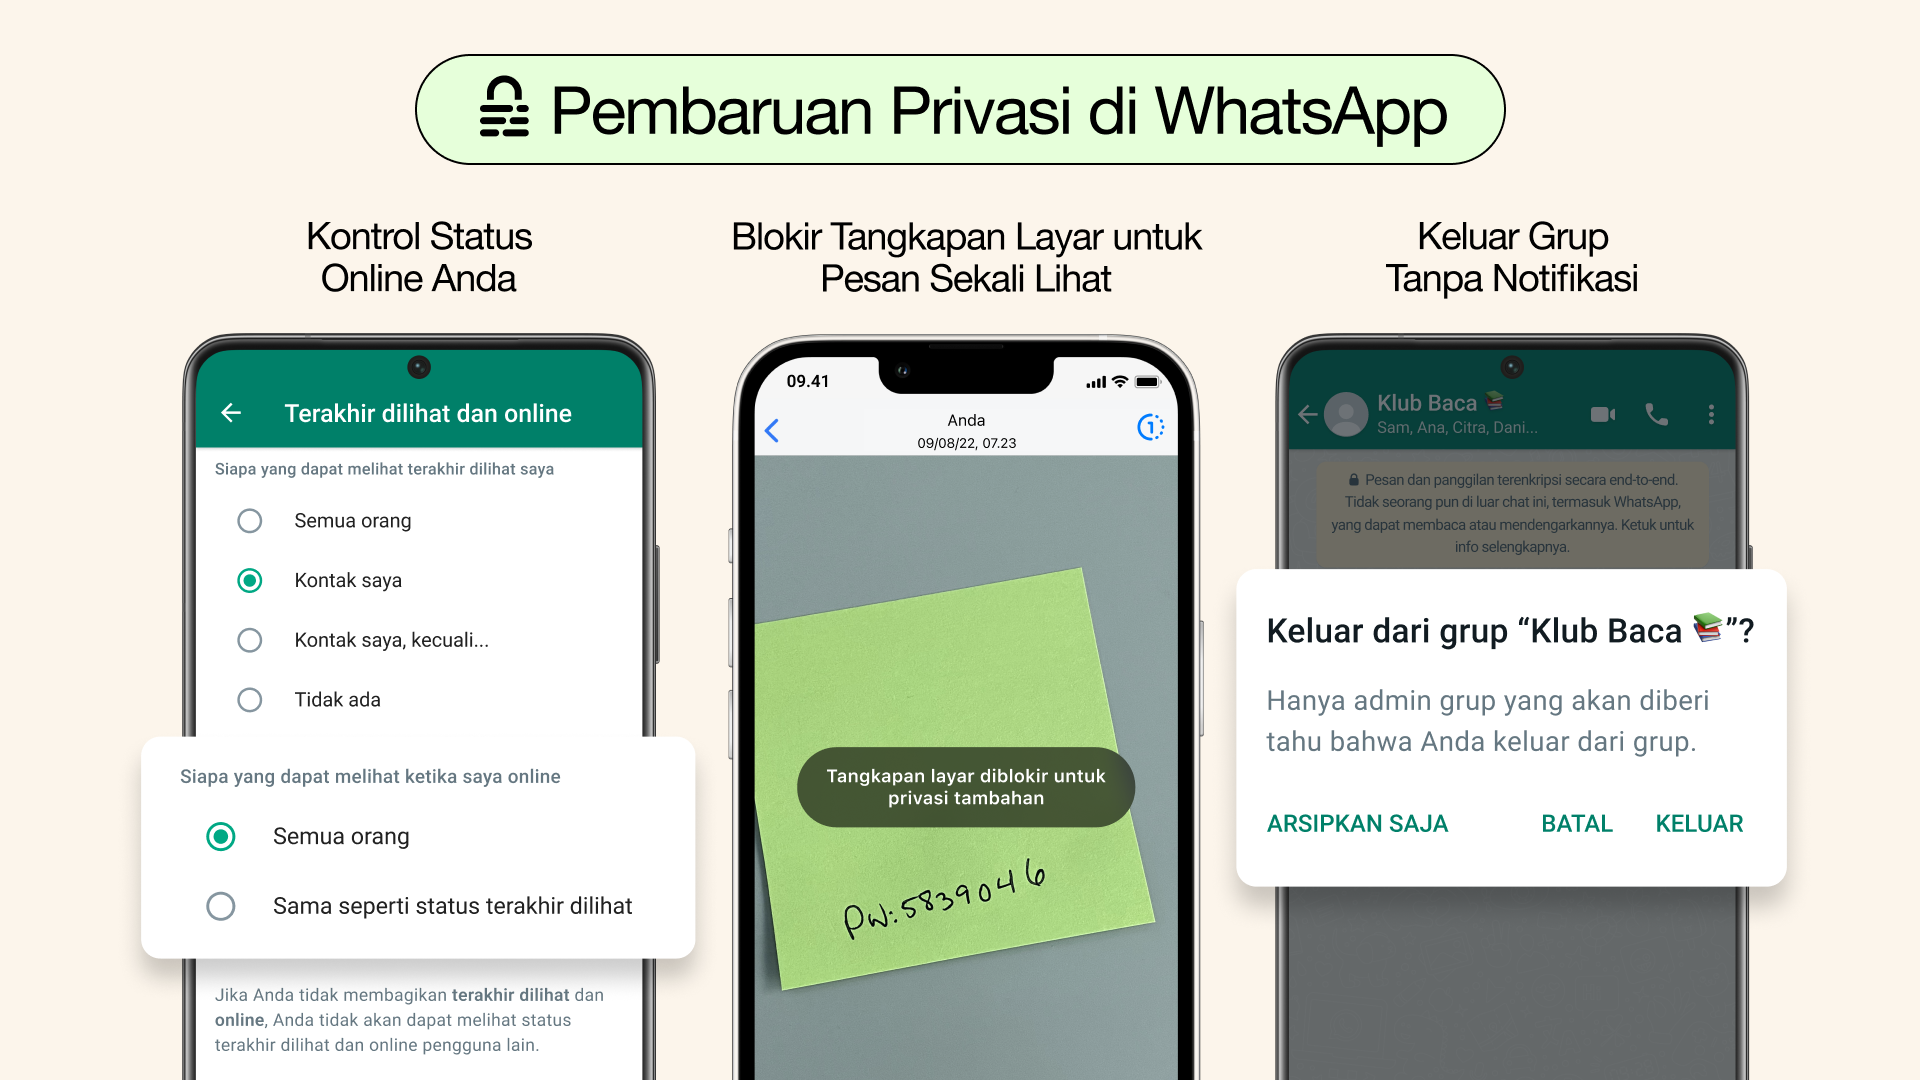 Tiga fitur baru keamanan di WhatsApp. (Sumber gambar: WhatsApp)